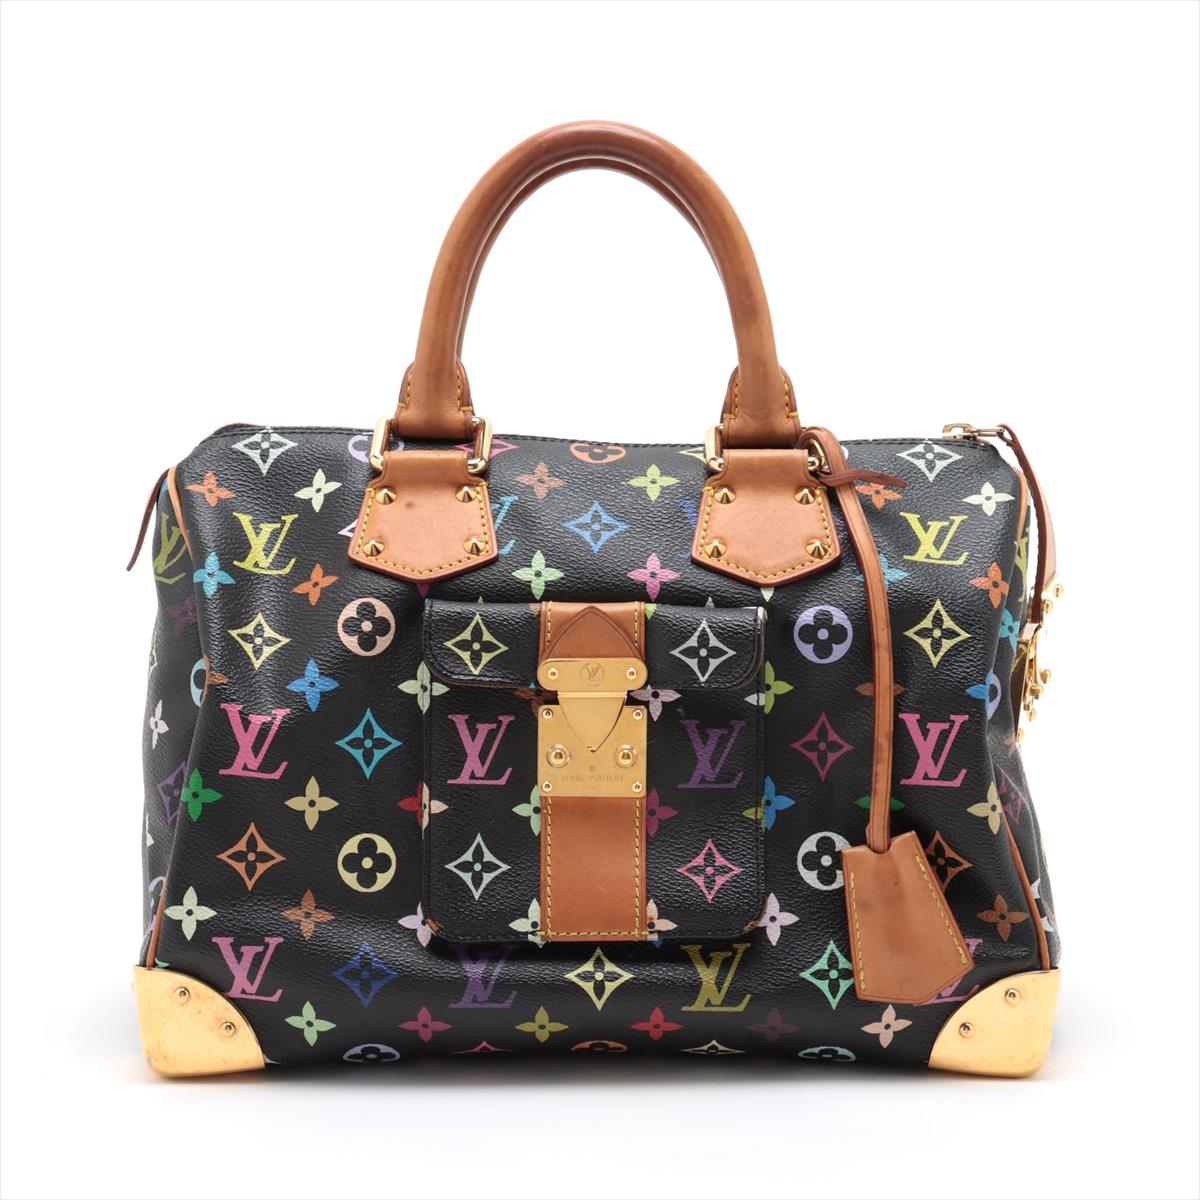 Die Louis Vuitton Multicolor Speedy 30 ist eine lebendige und ikonische Handtasche, die Luxus und spielerische Raffinesse nahtlos miteinander verbindet. Die klassische Speedy-Silhouette wird durch das charakteristische LV